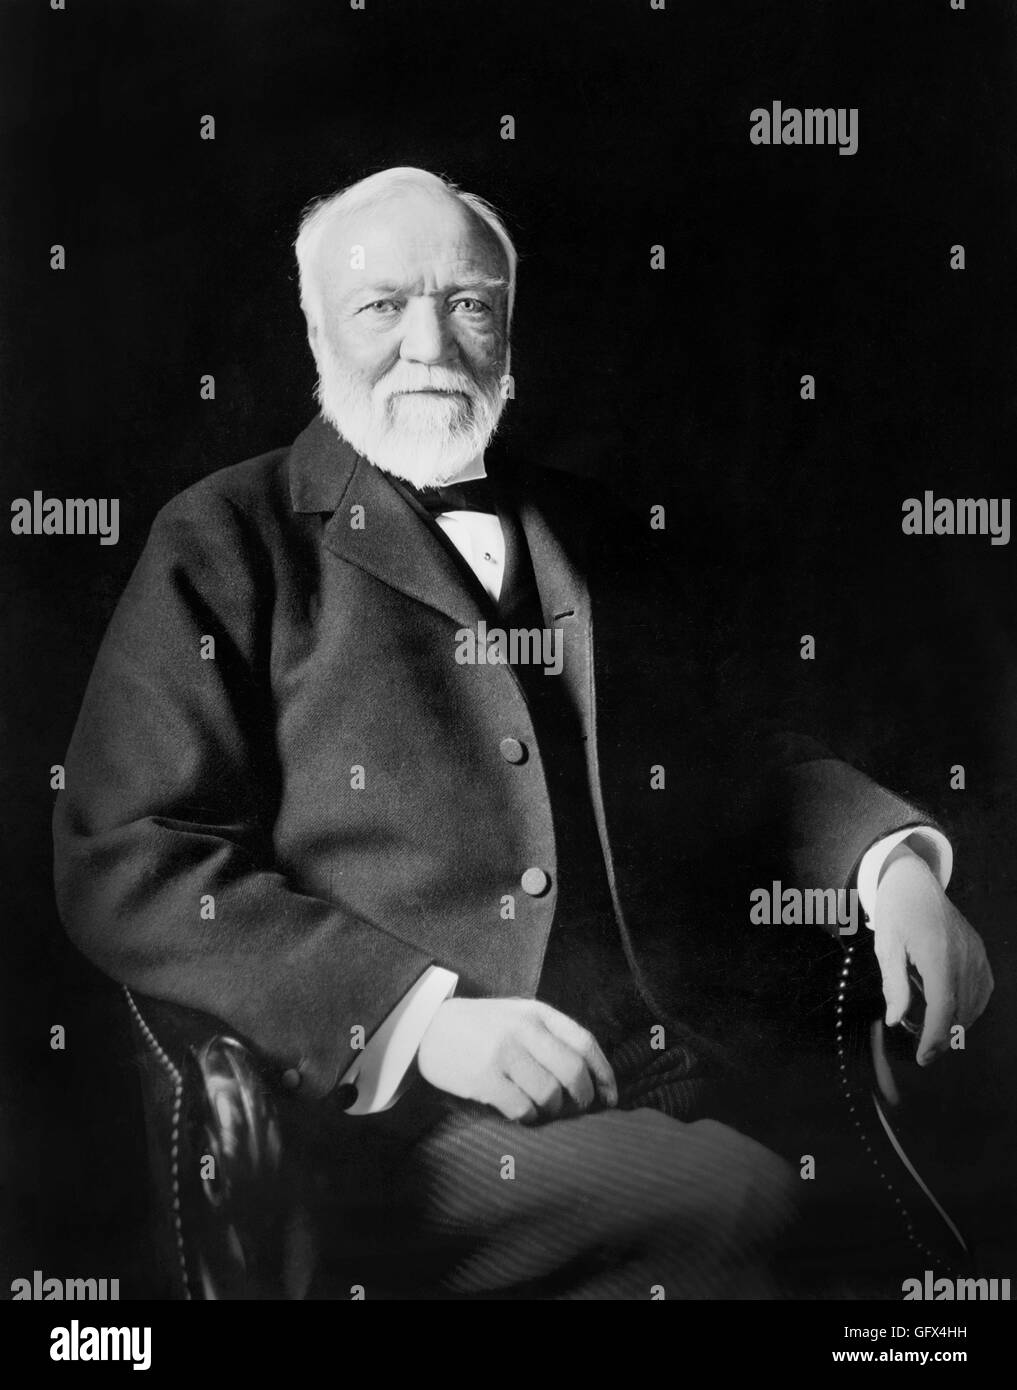 Andrew Carnegie, portrait de l'industriel Accédez par Theodore Marceau, c.1913. Banque D'Images